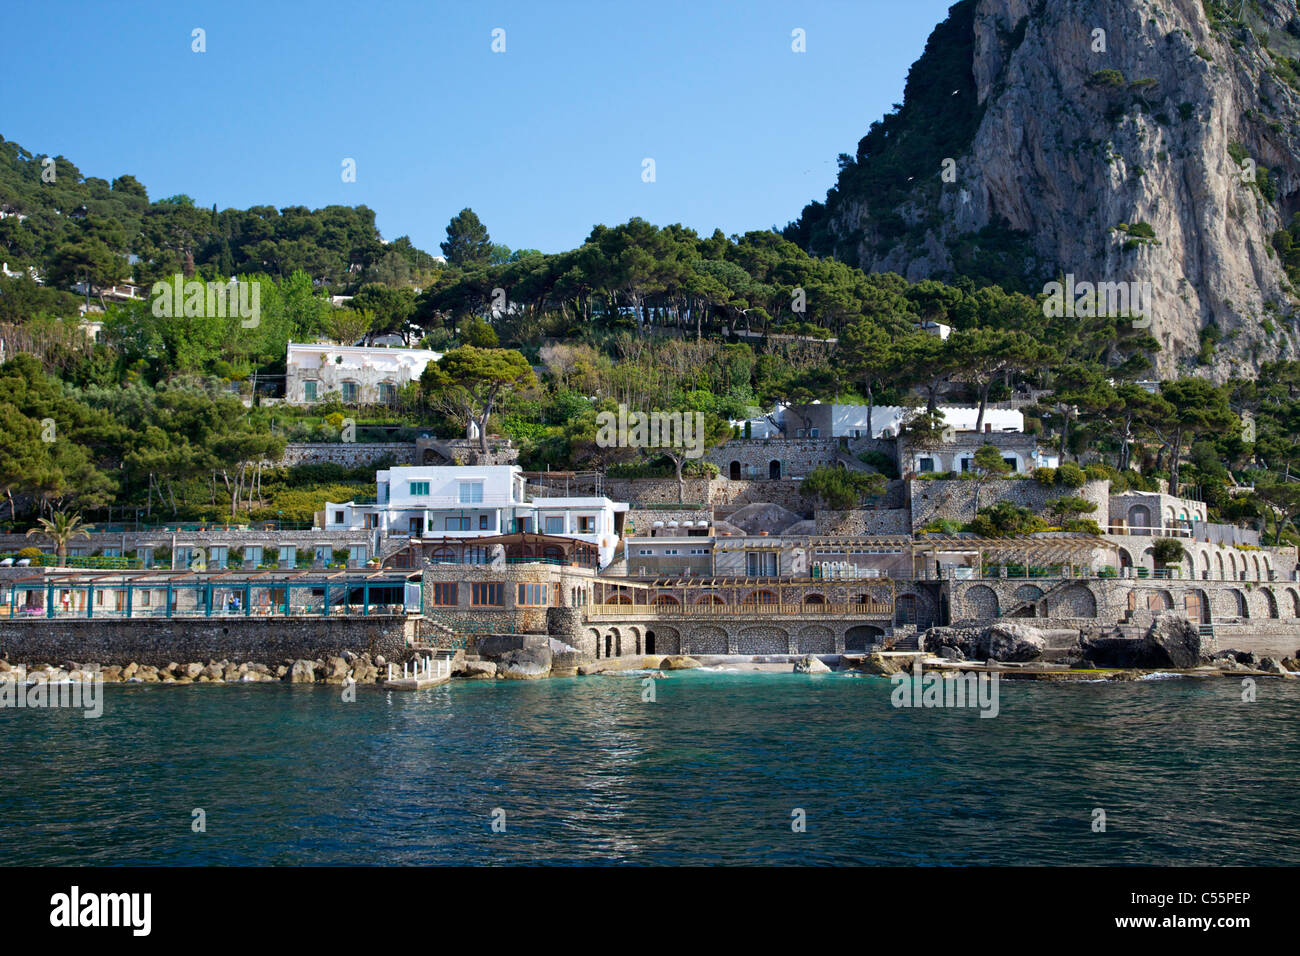 Tourist resort at the coast, Gracie Fields Villa, La Canzone del Mar, Capri, Campania, Italy Stock Photo